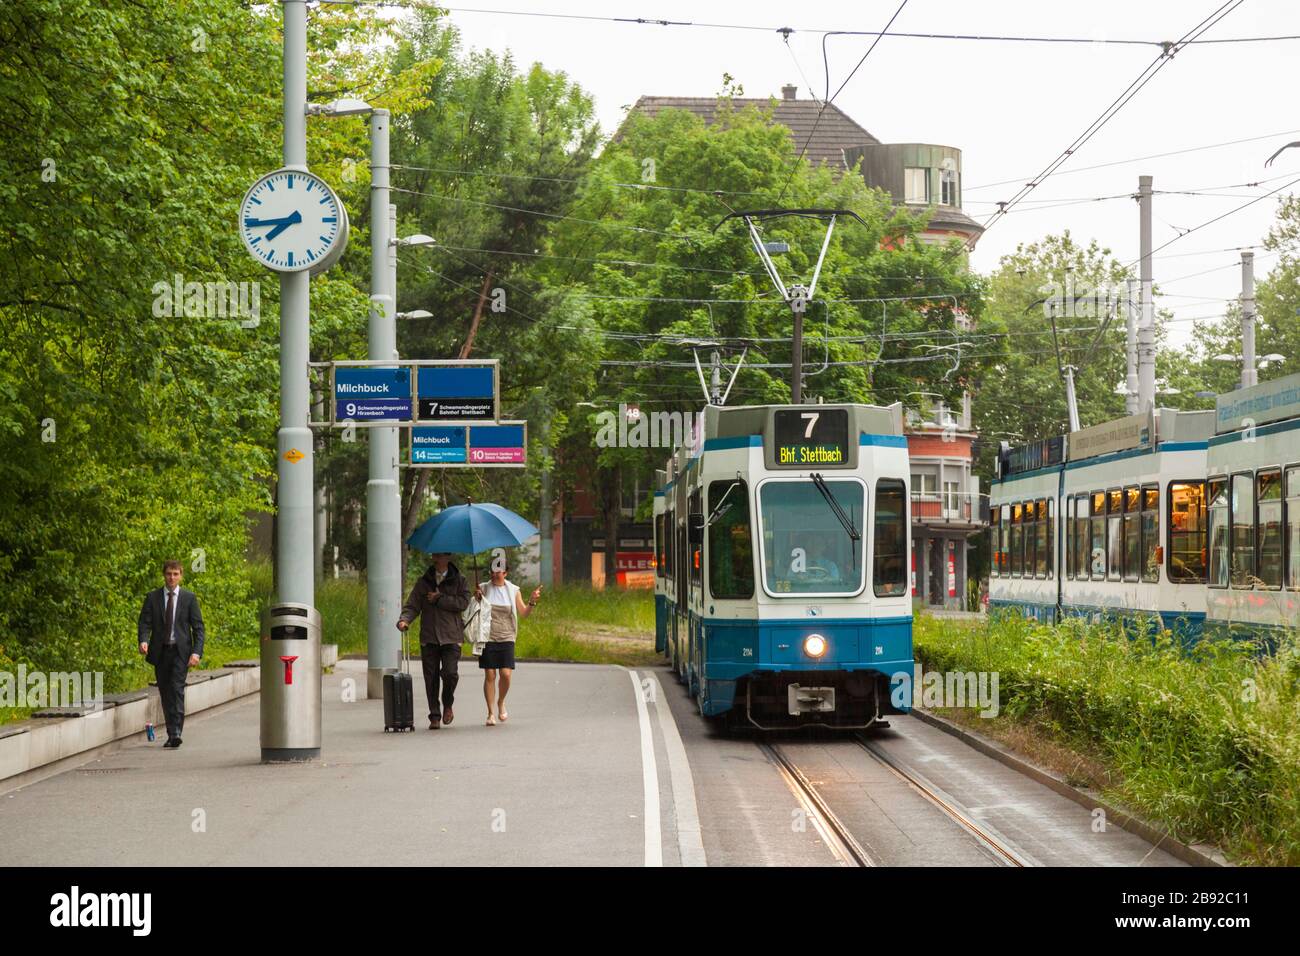 Die Leute laufen flau, um die ankommende Straßenbahn am Bahnhof Milchbuck in Zürich, Schweiz, zu erreichen. Stockfoto